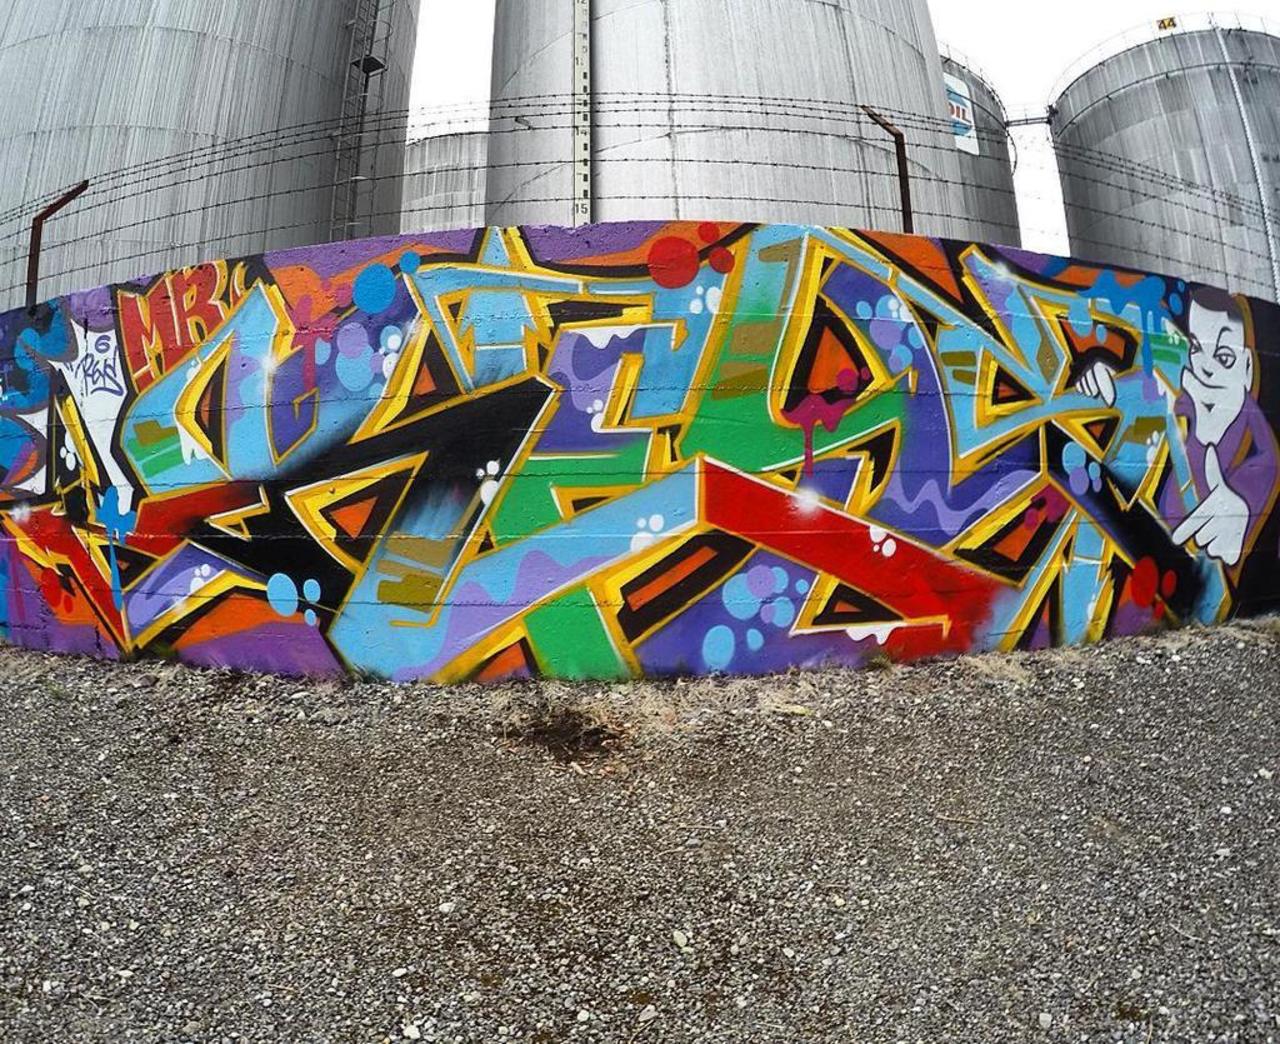 via #reyism72 "http://bit.ly/1RyTn11" #graffiti #streetart http://t.co/Dv5KcqnXID